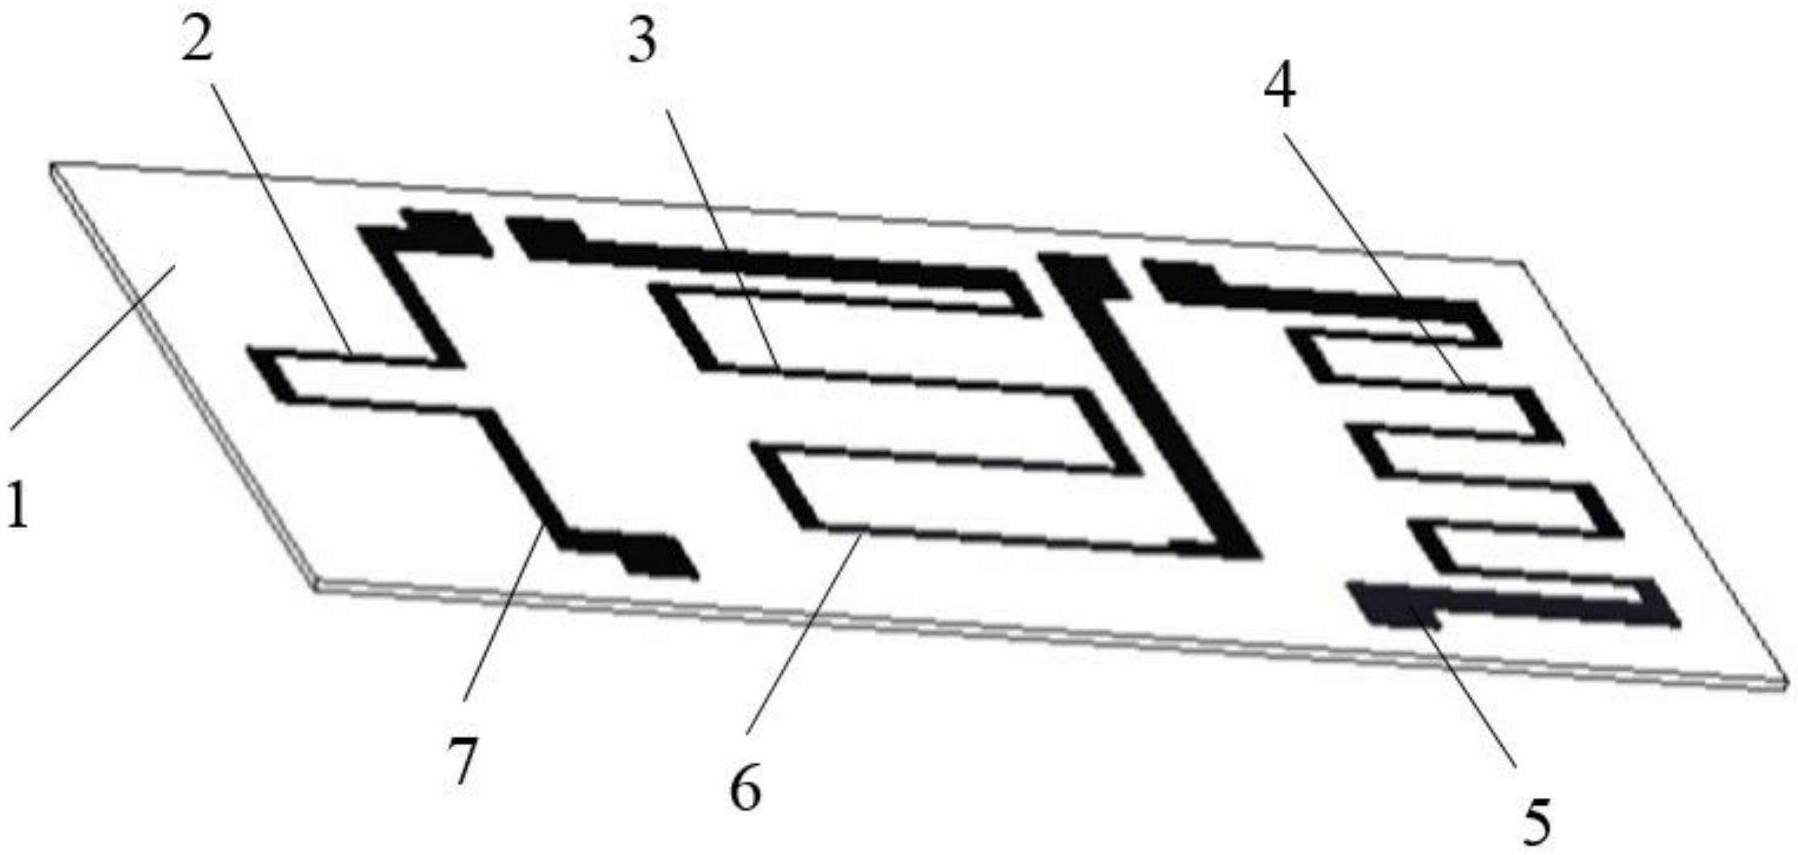 可测量偏置敏感栅中心轴向偏导的轴向分布三敏感栅金属应变片